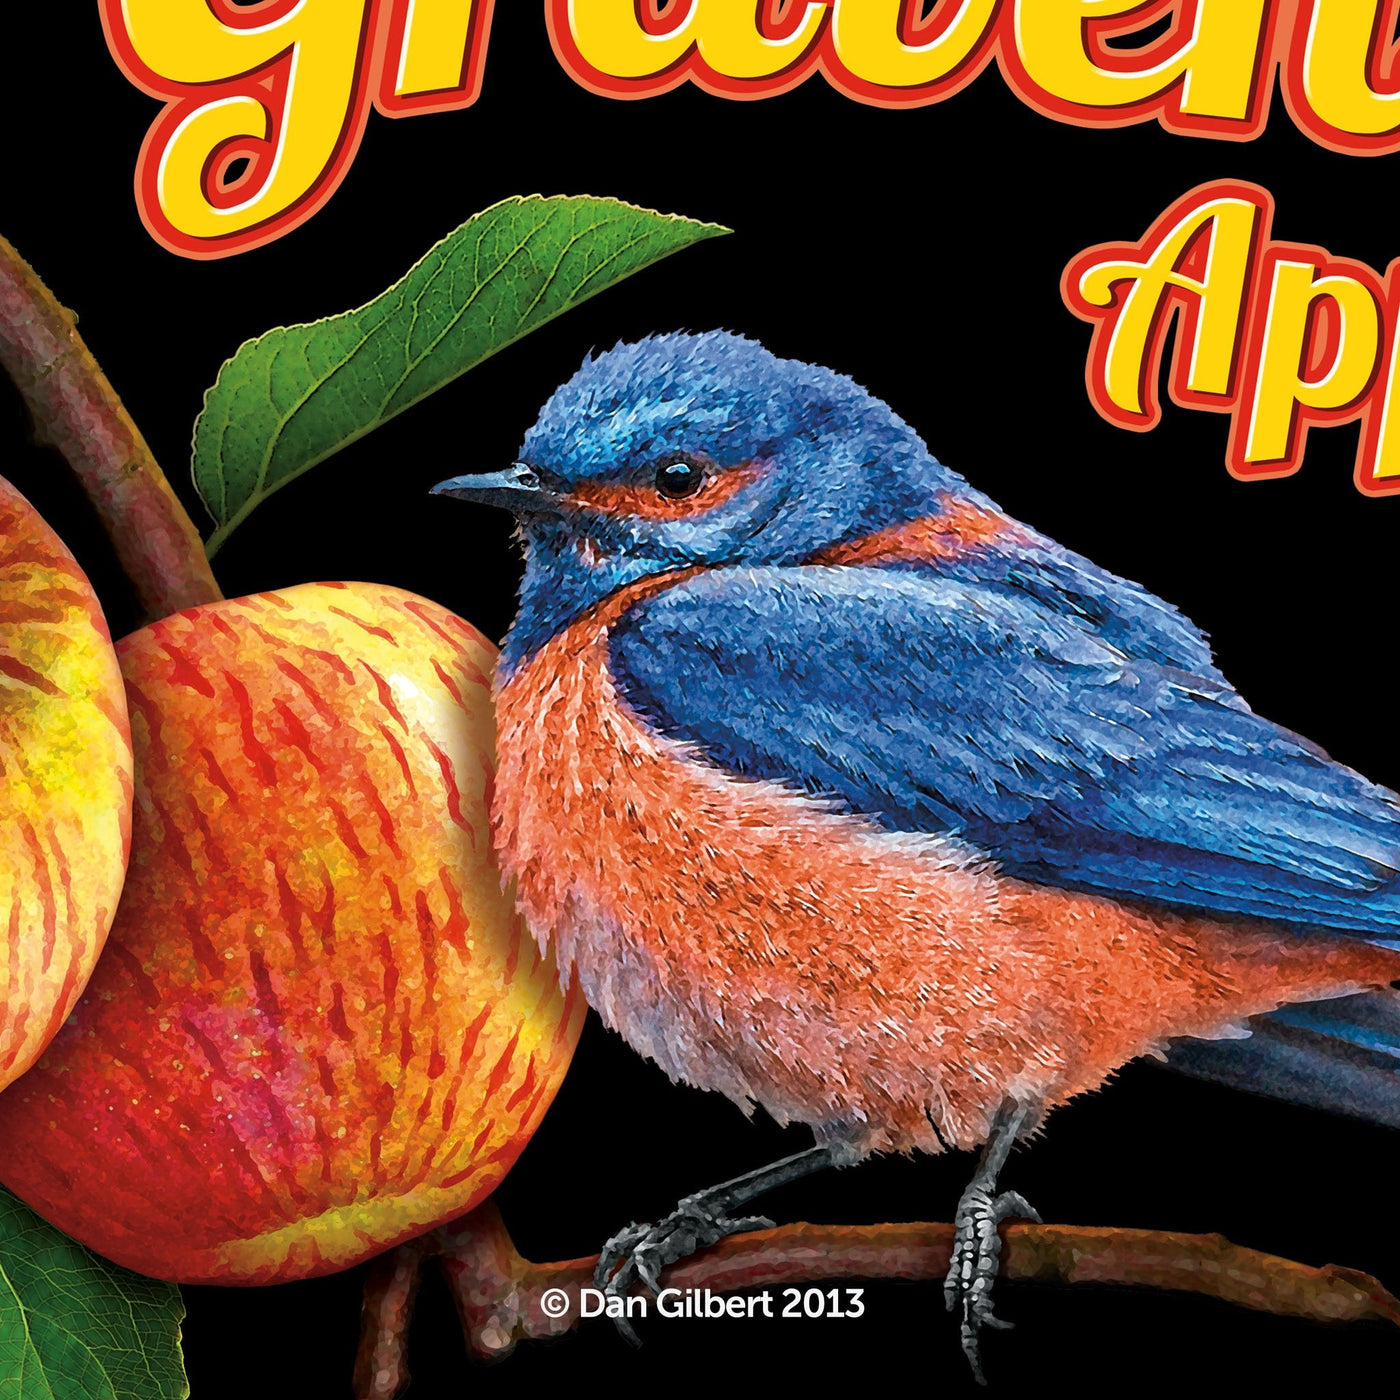 Limited Edition Giclée - Original Crate Label - Gravenstein Apple Fair 2013 (Bluebird) - by Dan Gilbert